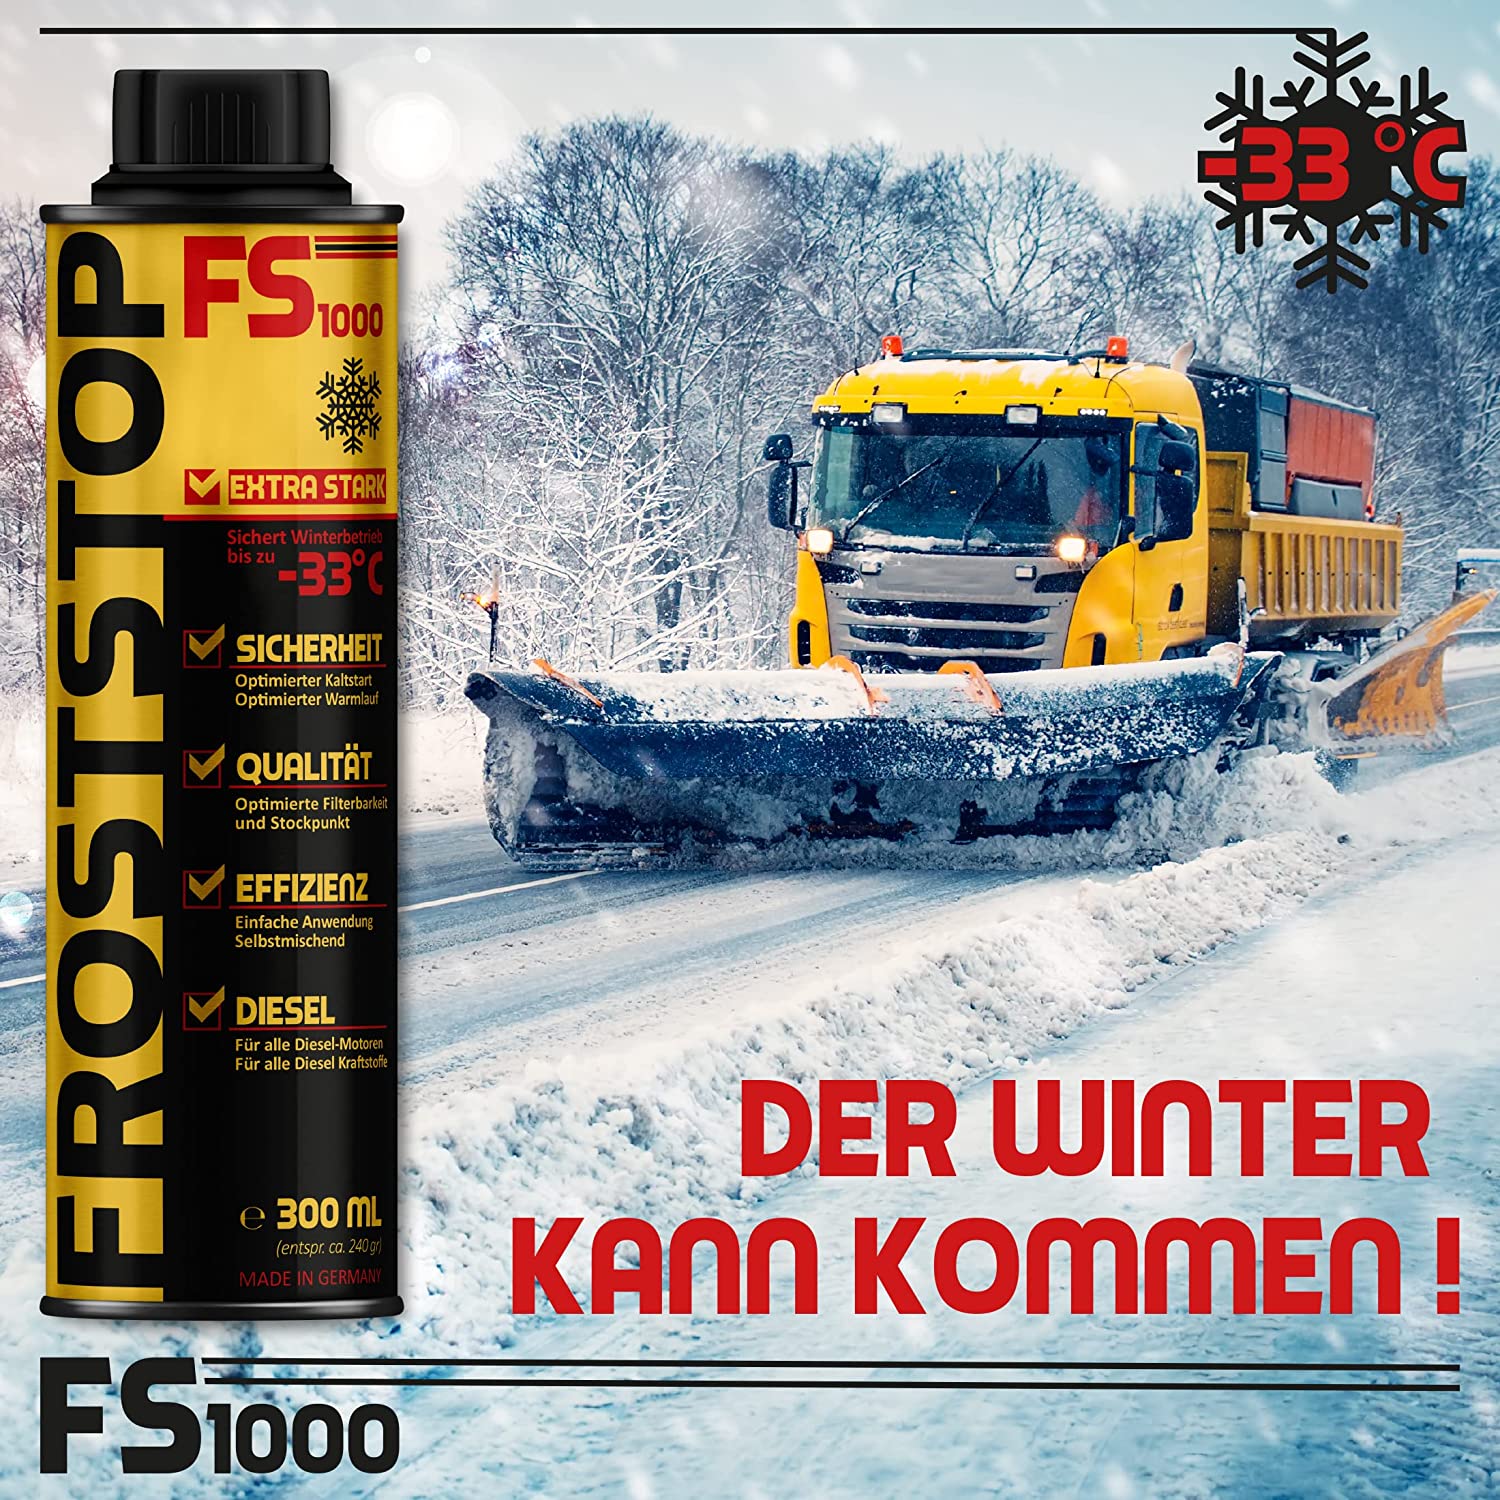 ORIGINAL SYPRIN Diesel Froststop Professional - LKW, Baumaschinen -  FROSTSCHUTZ BIS -33C - 2x 300ml - syprin